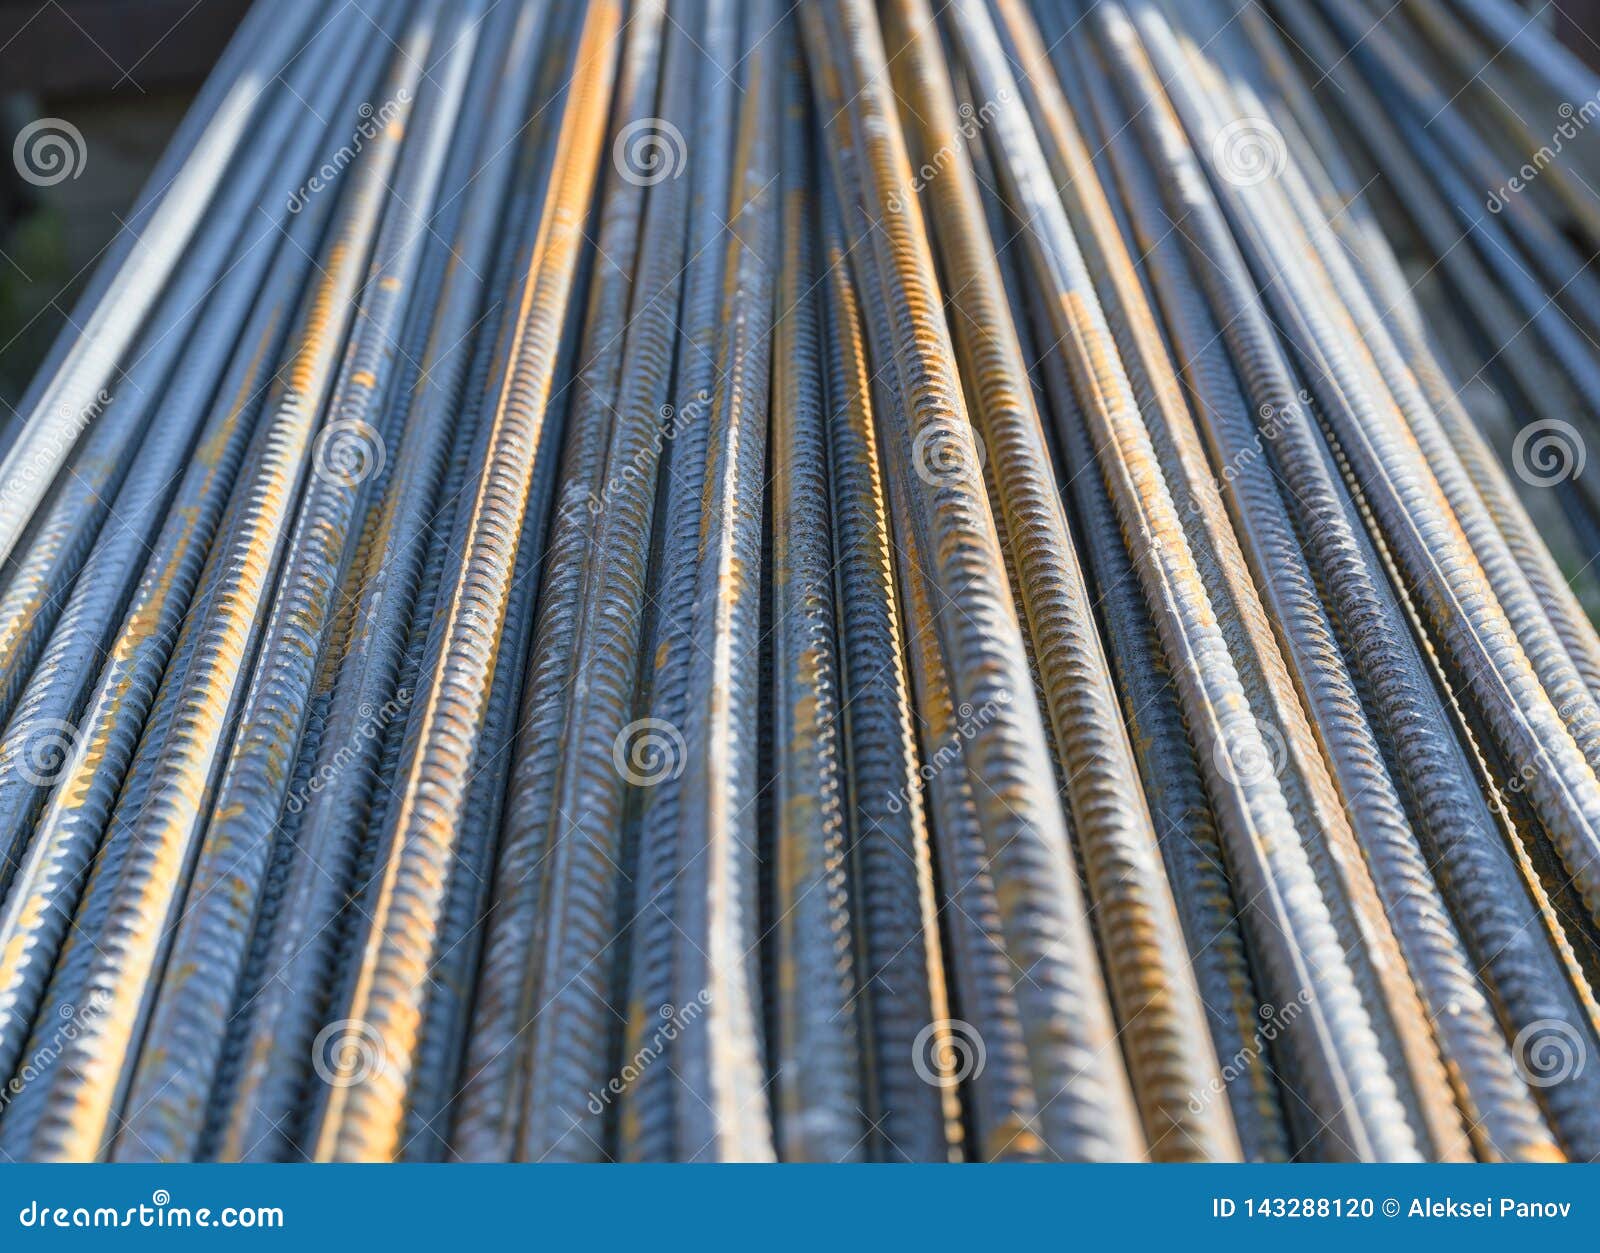 Rinforzi Il Tondino Di Ferro D'acciaio Fotografia Stock - Immagine di  ruggine, estratto: 143288120